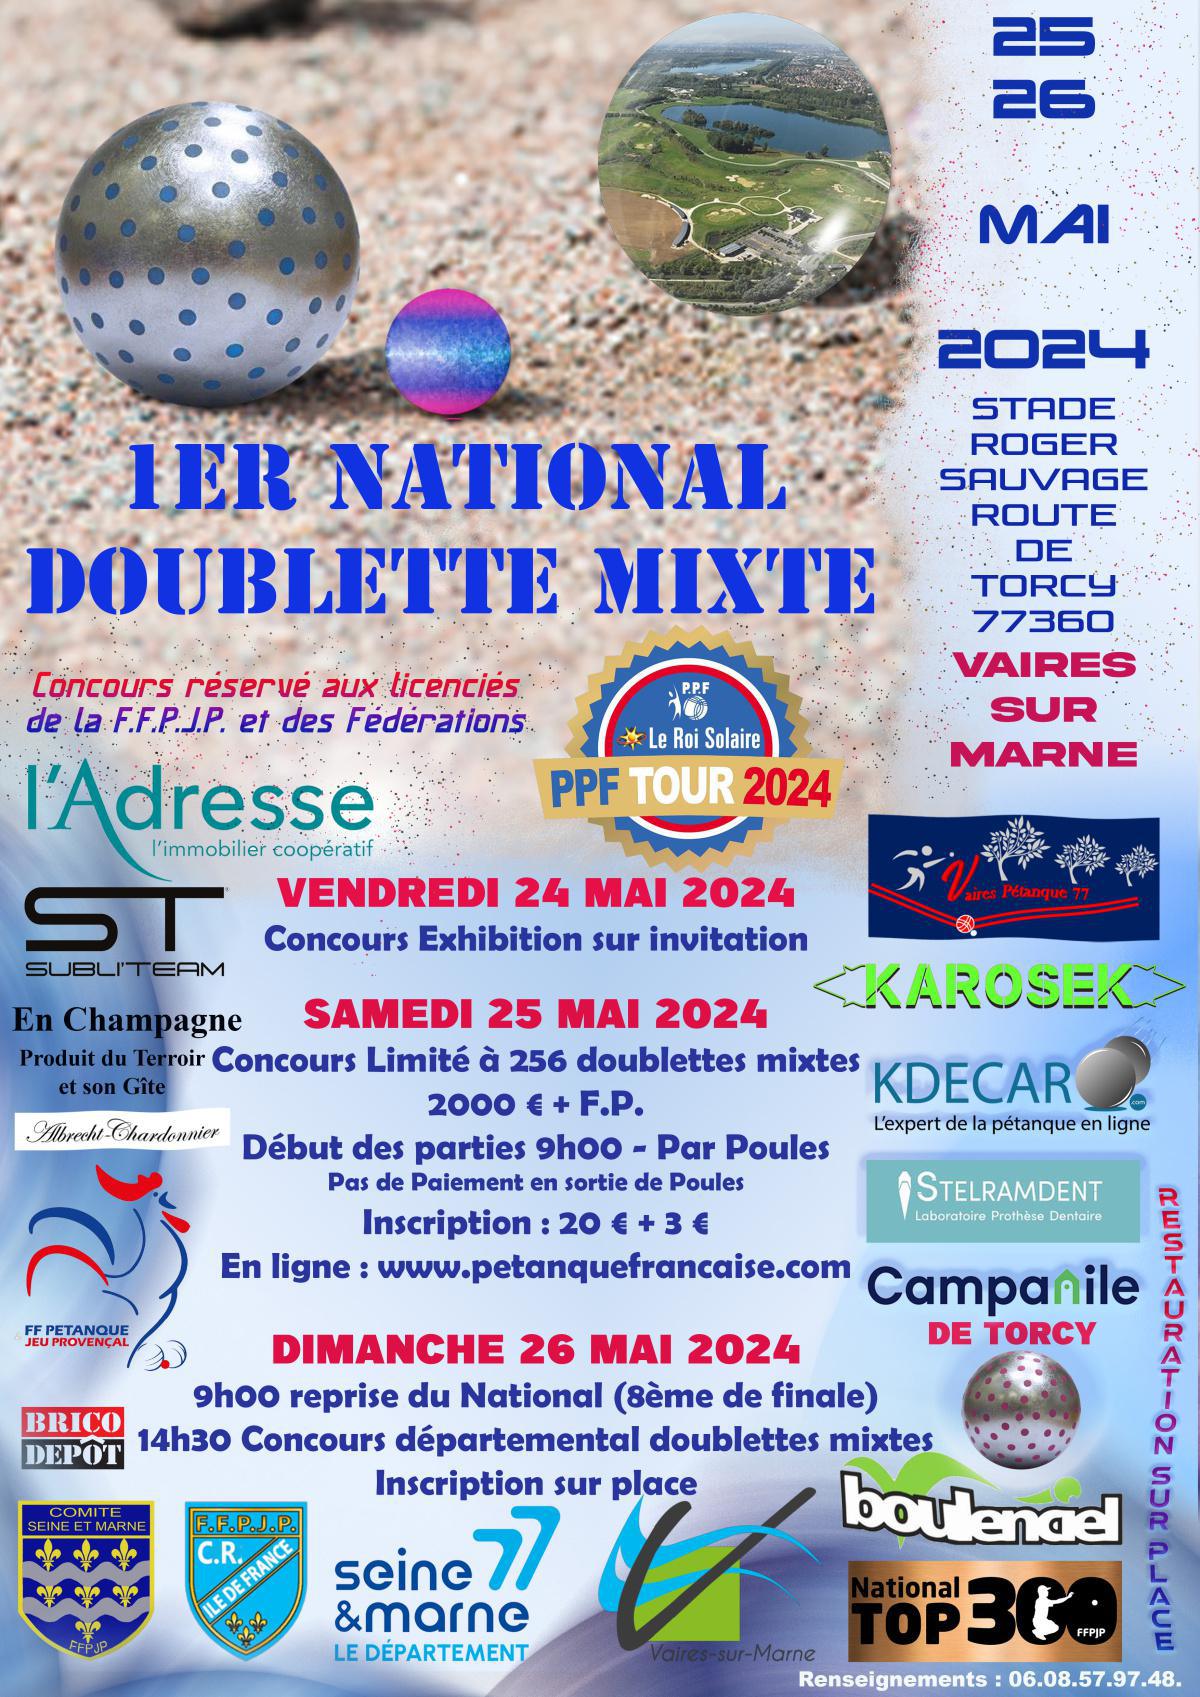 National Doublette Mixte de Vaires-sur-Marne 2024 - TOP 300 Pétanque - Par poules